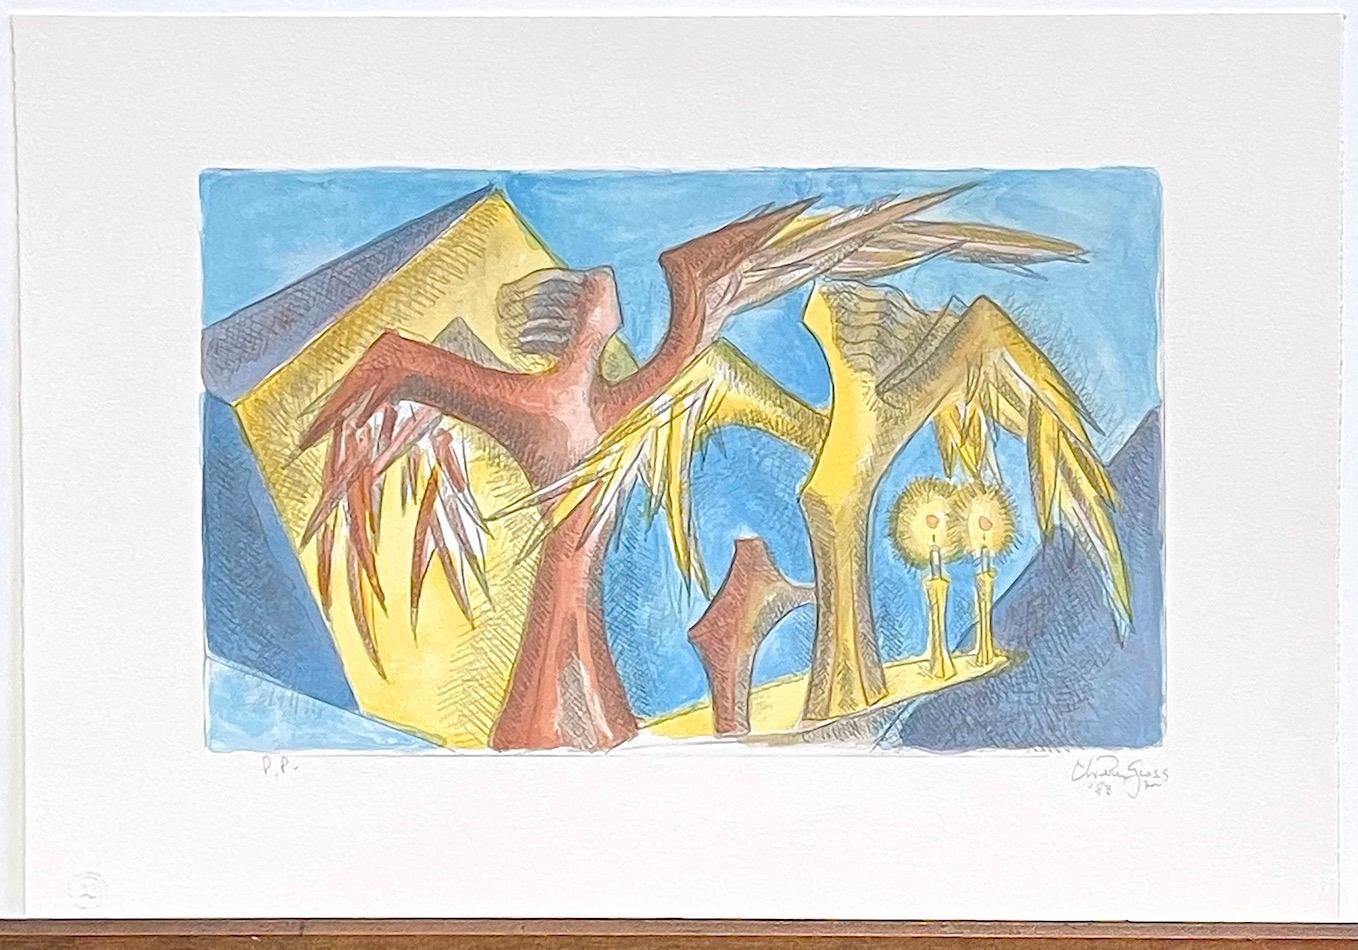 SABBATH ANGELS est une lithographie originale dessinée à la main (et non une reproduction photographique ou une impression numérique) par l'artiste/sculpteur américain Chaim Gross, présentant un impressionnant dessin sculptural de deux majestueux